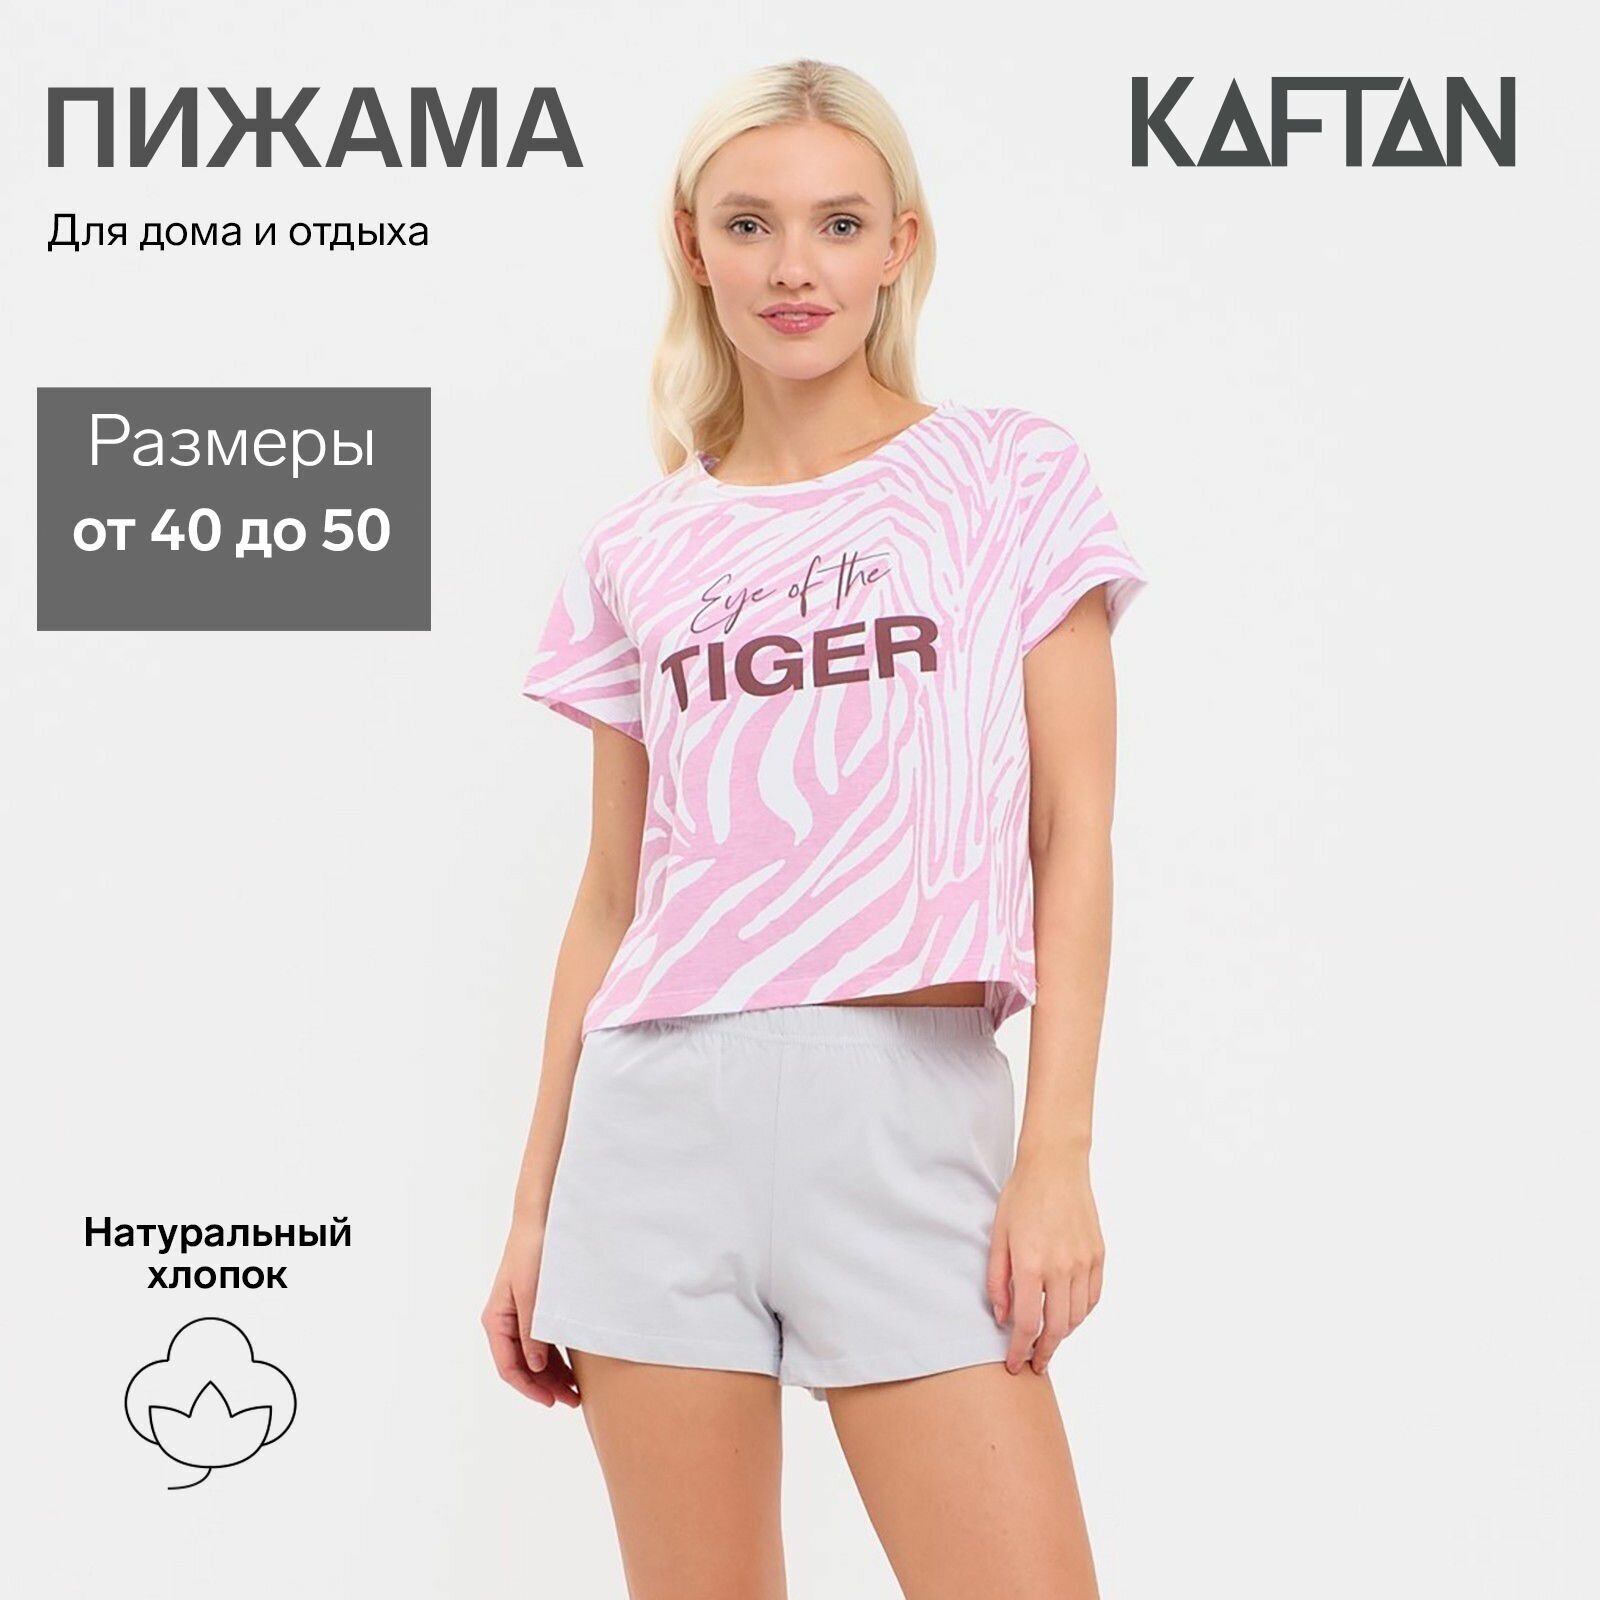 Пижама женская (футболка и шорты) KAFTAN "Tiger" р. 48-50 - фотография № 1